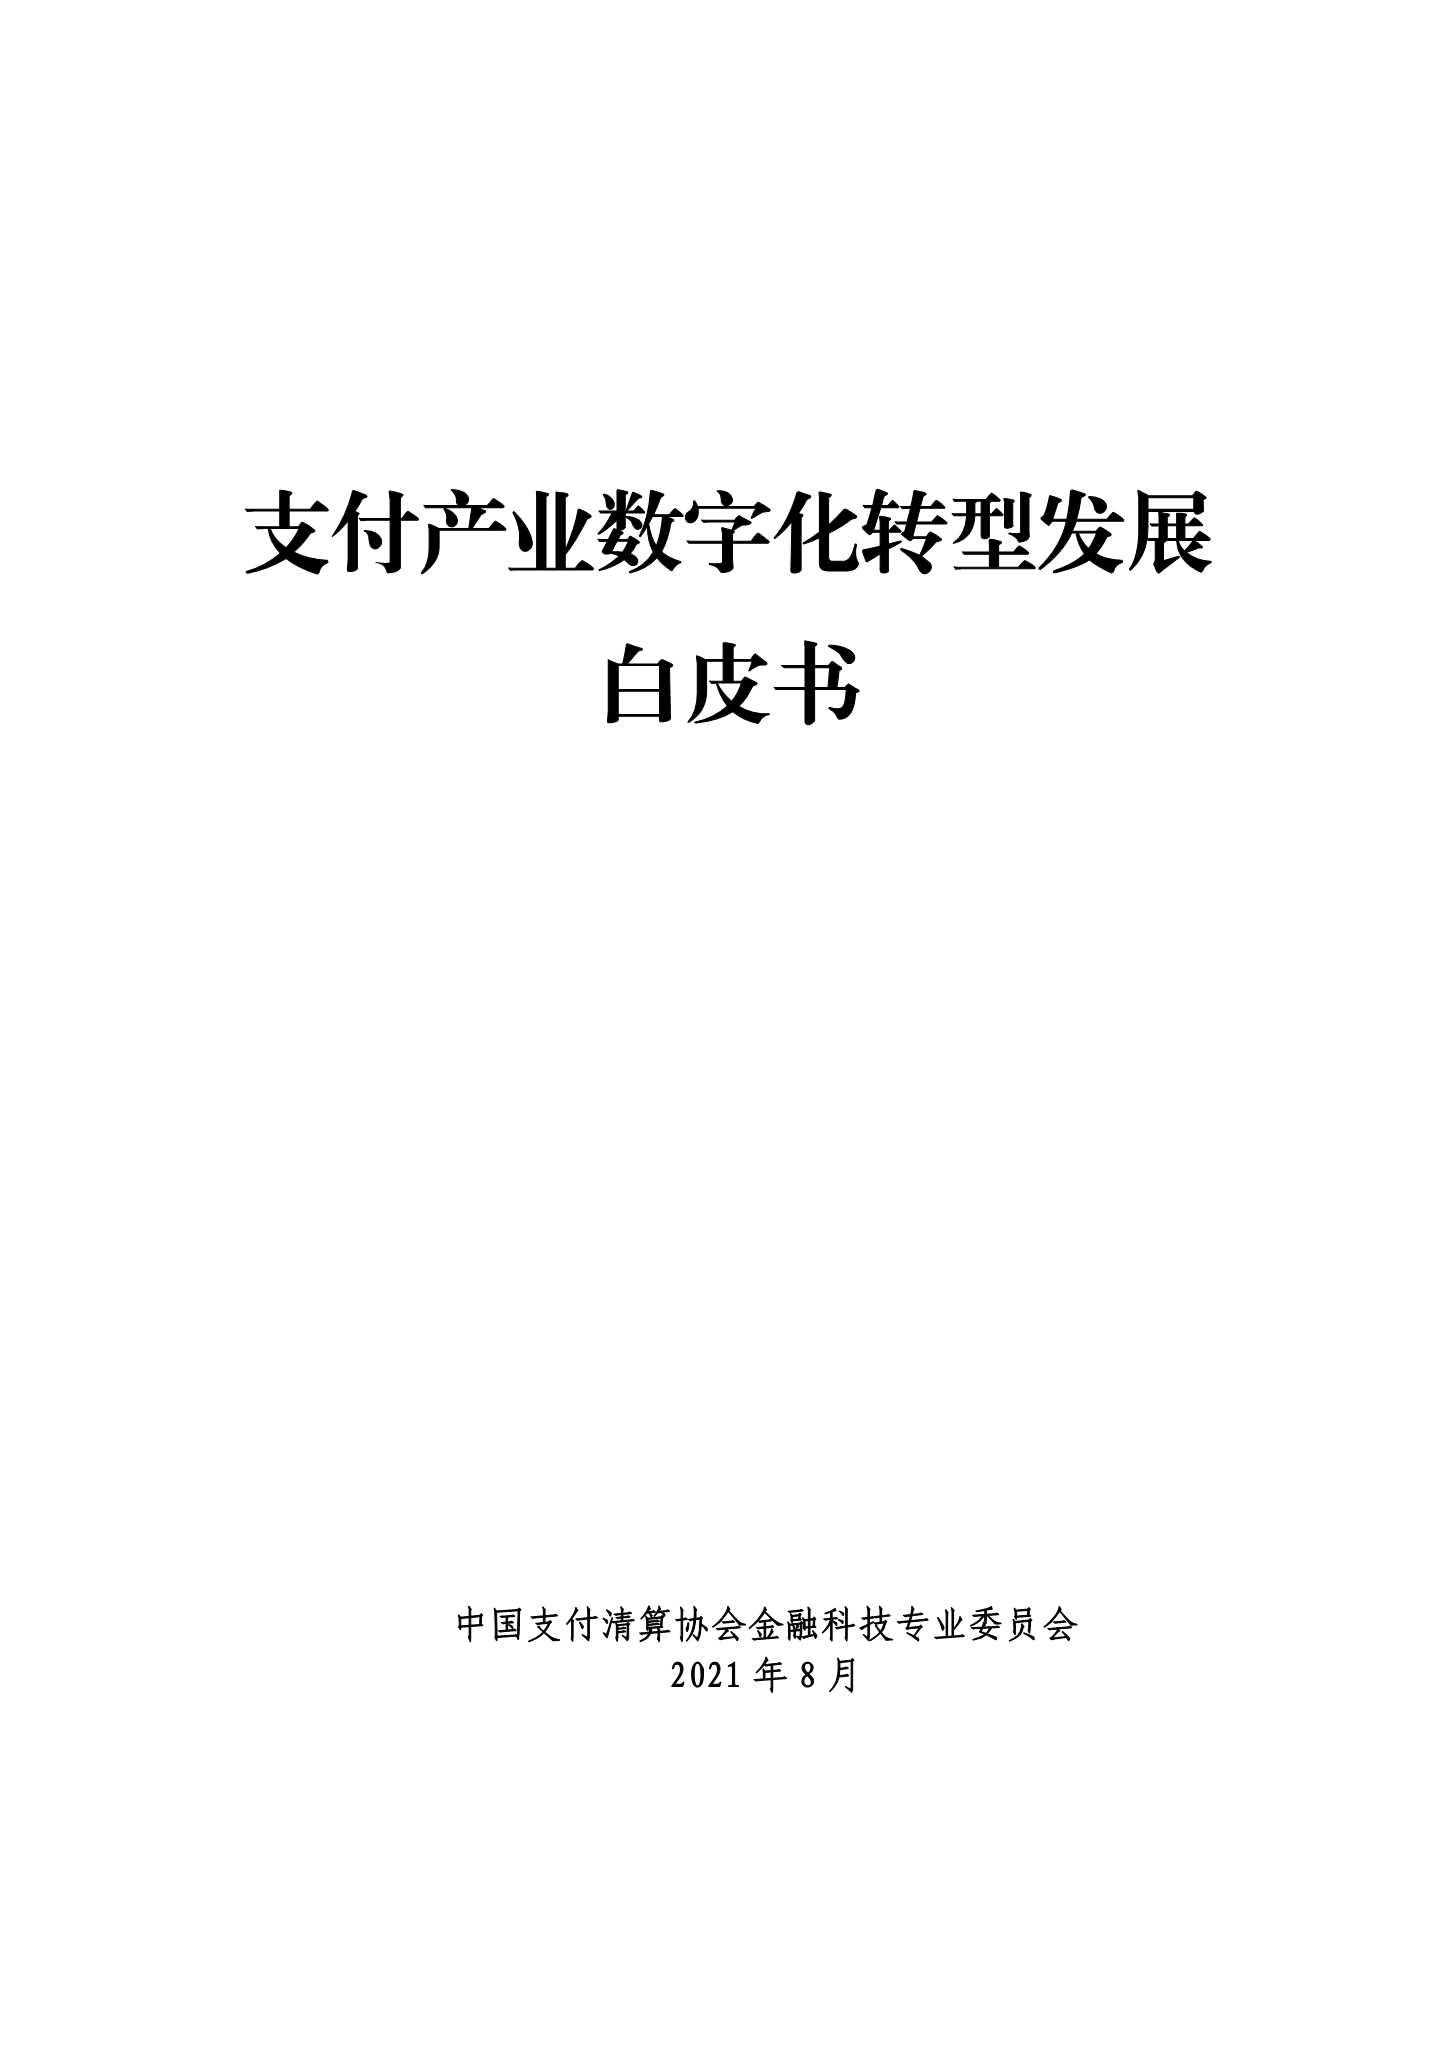 中国支付清算协会-支付产业数字化转型发展白皮书-2021.10-330页